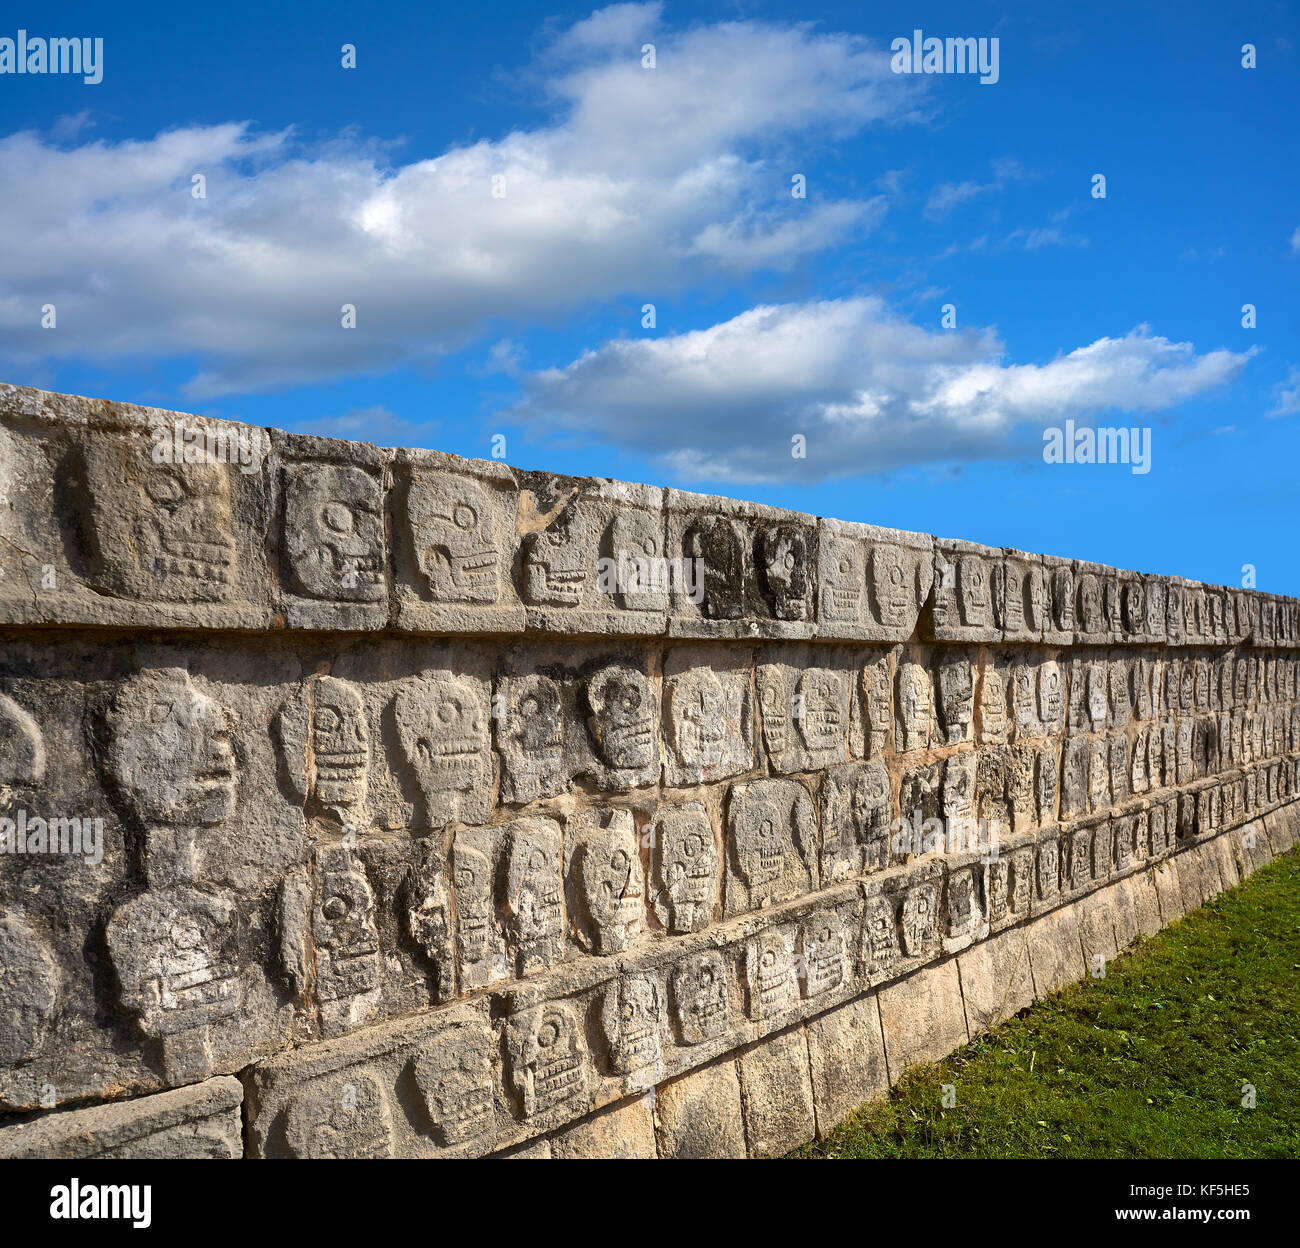 Chichen Itza Tzompantli the Wall of Skulls in Mexico Yucatan Stock Photo